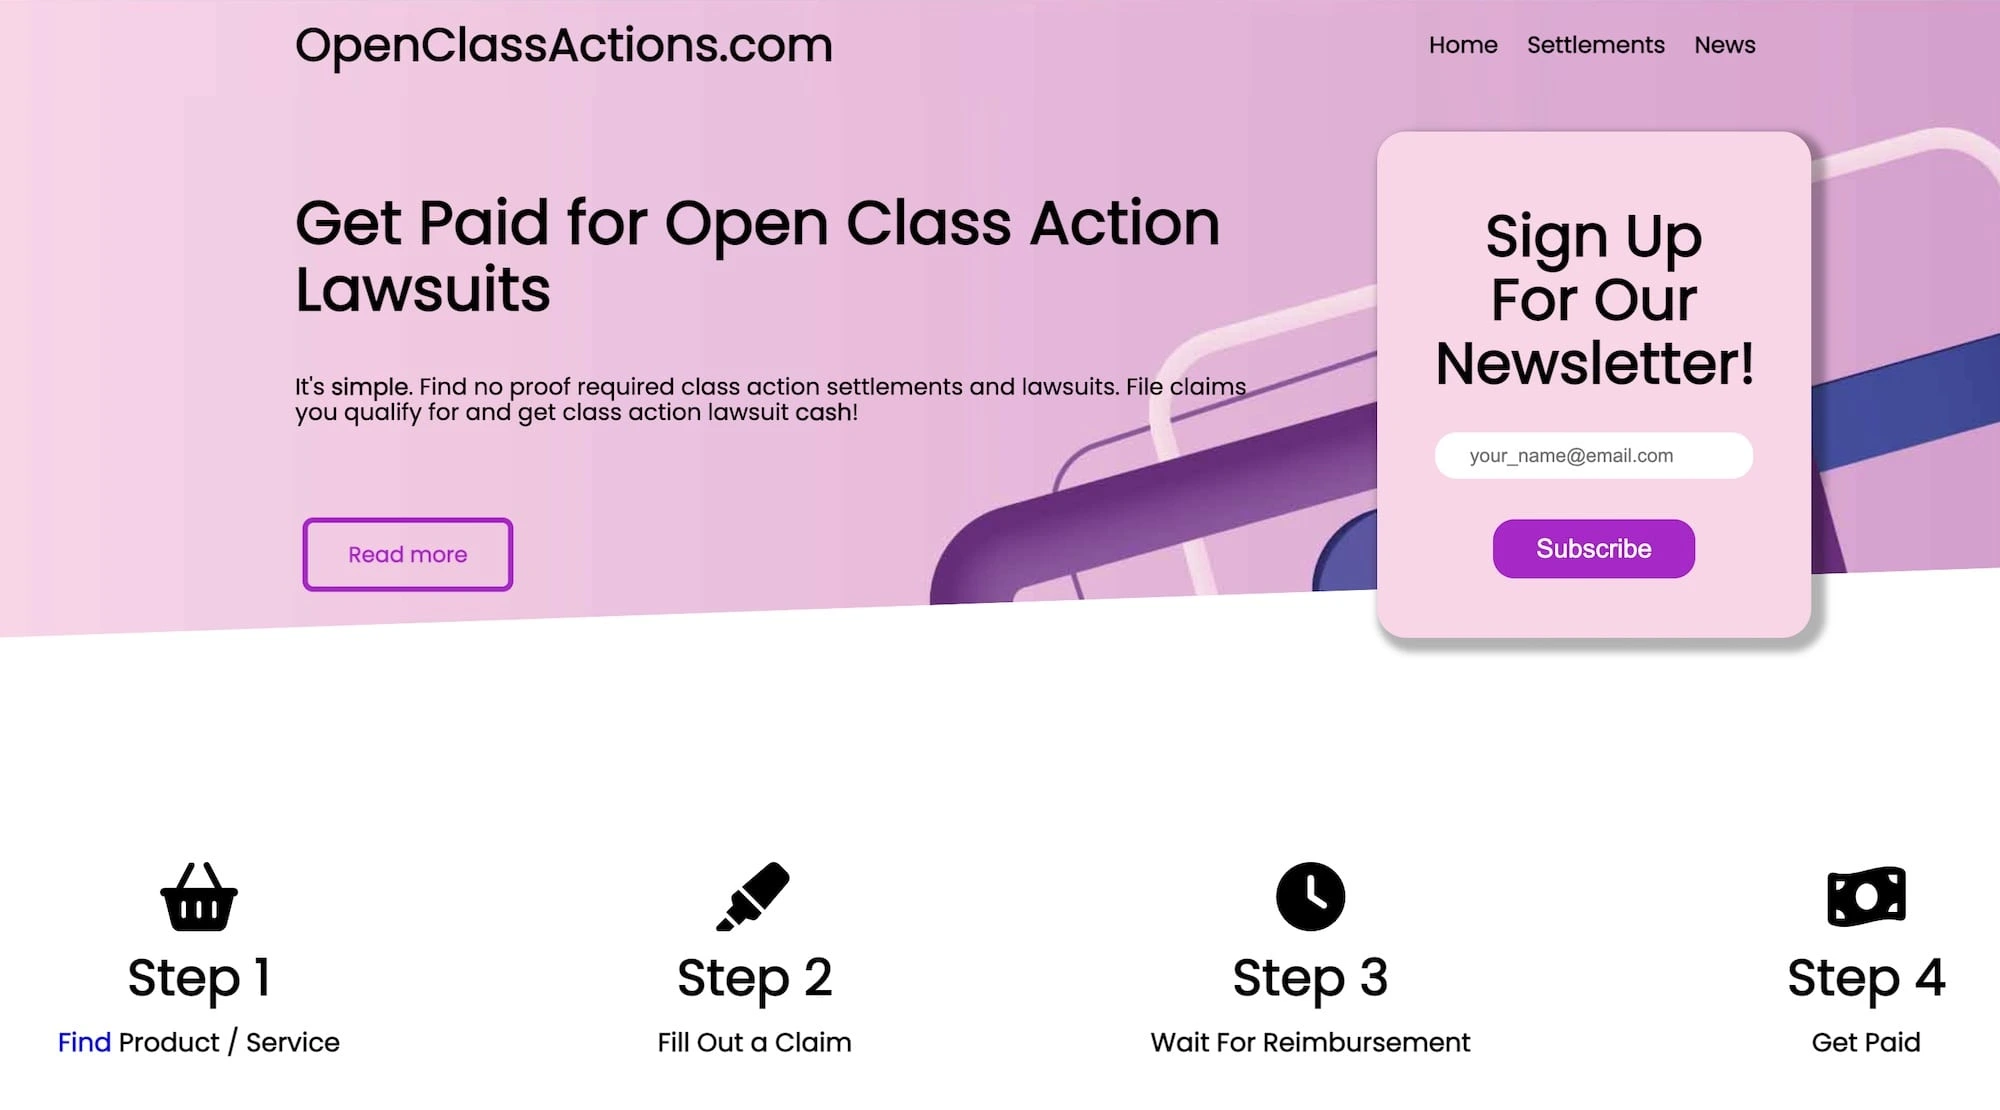 Open Class Action's website.